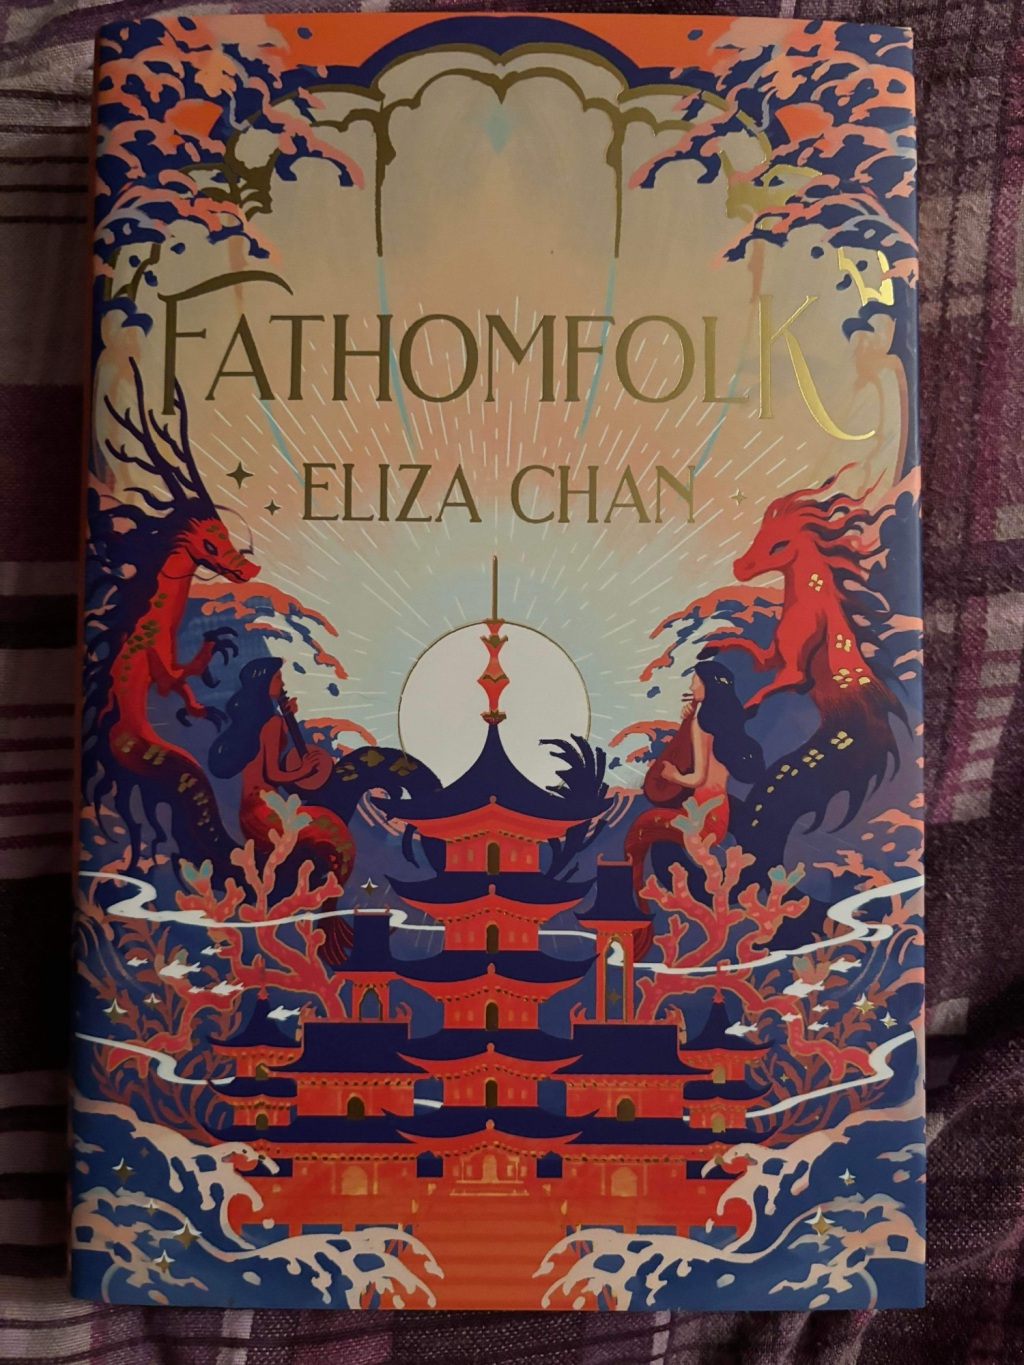 Fathomfolk by Eliza Chan